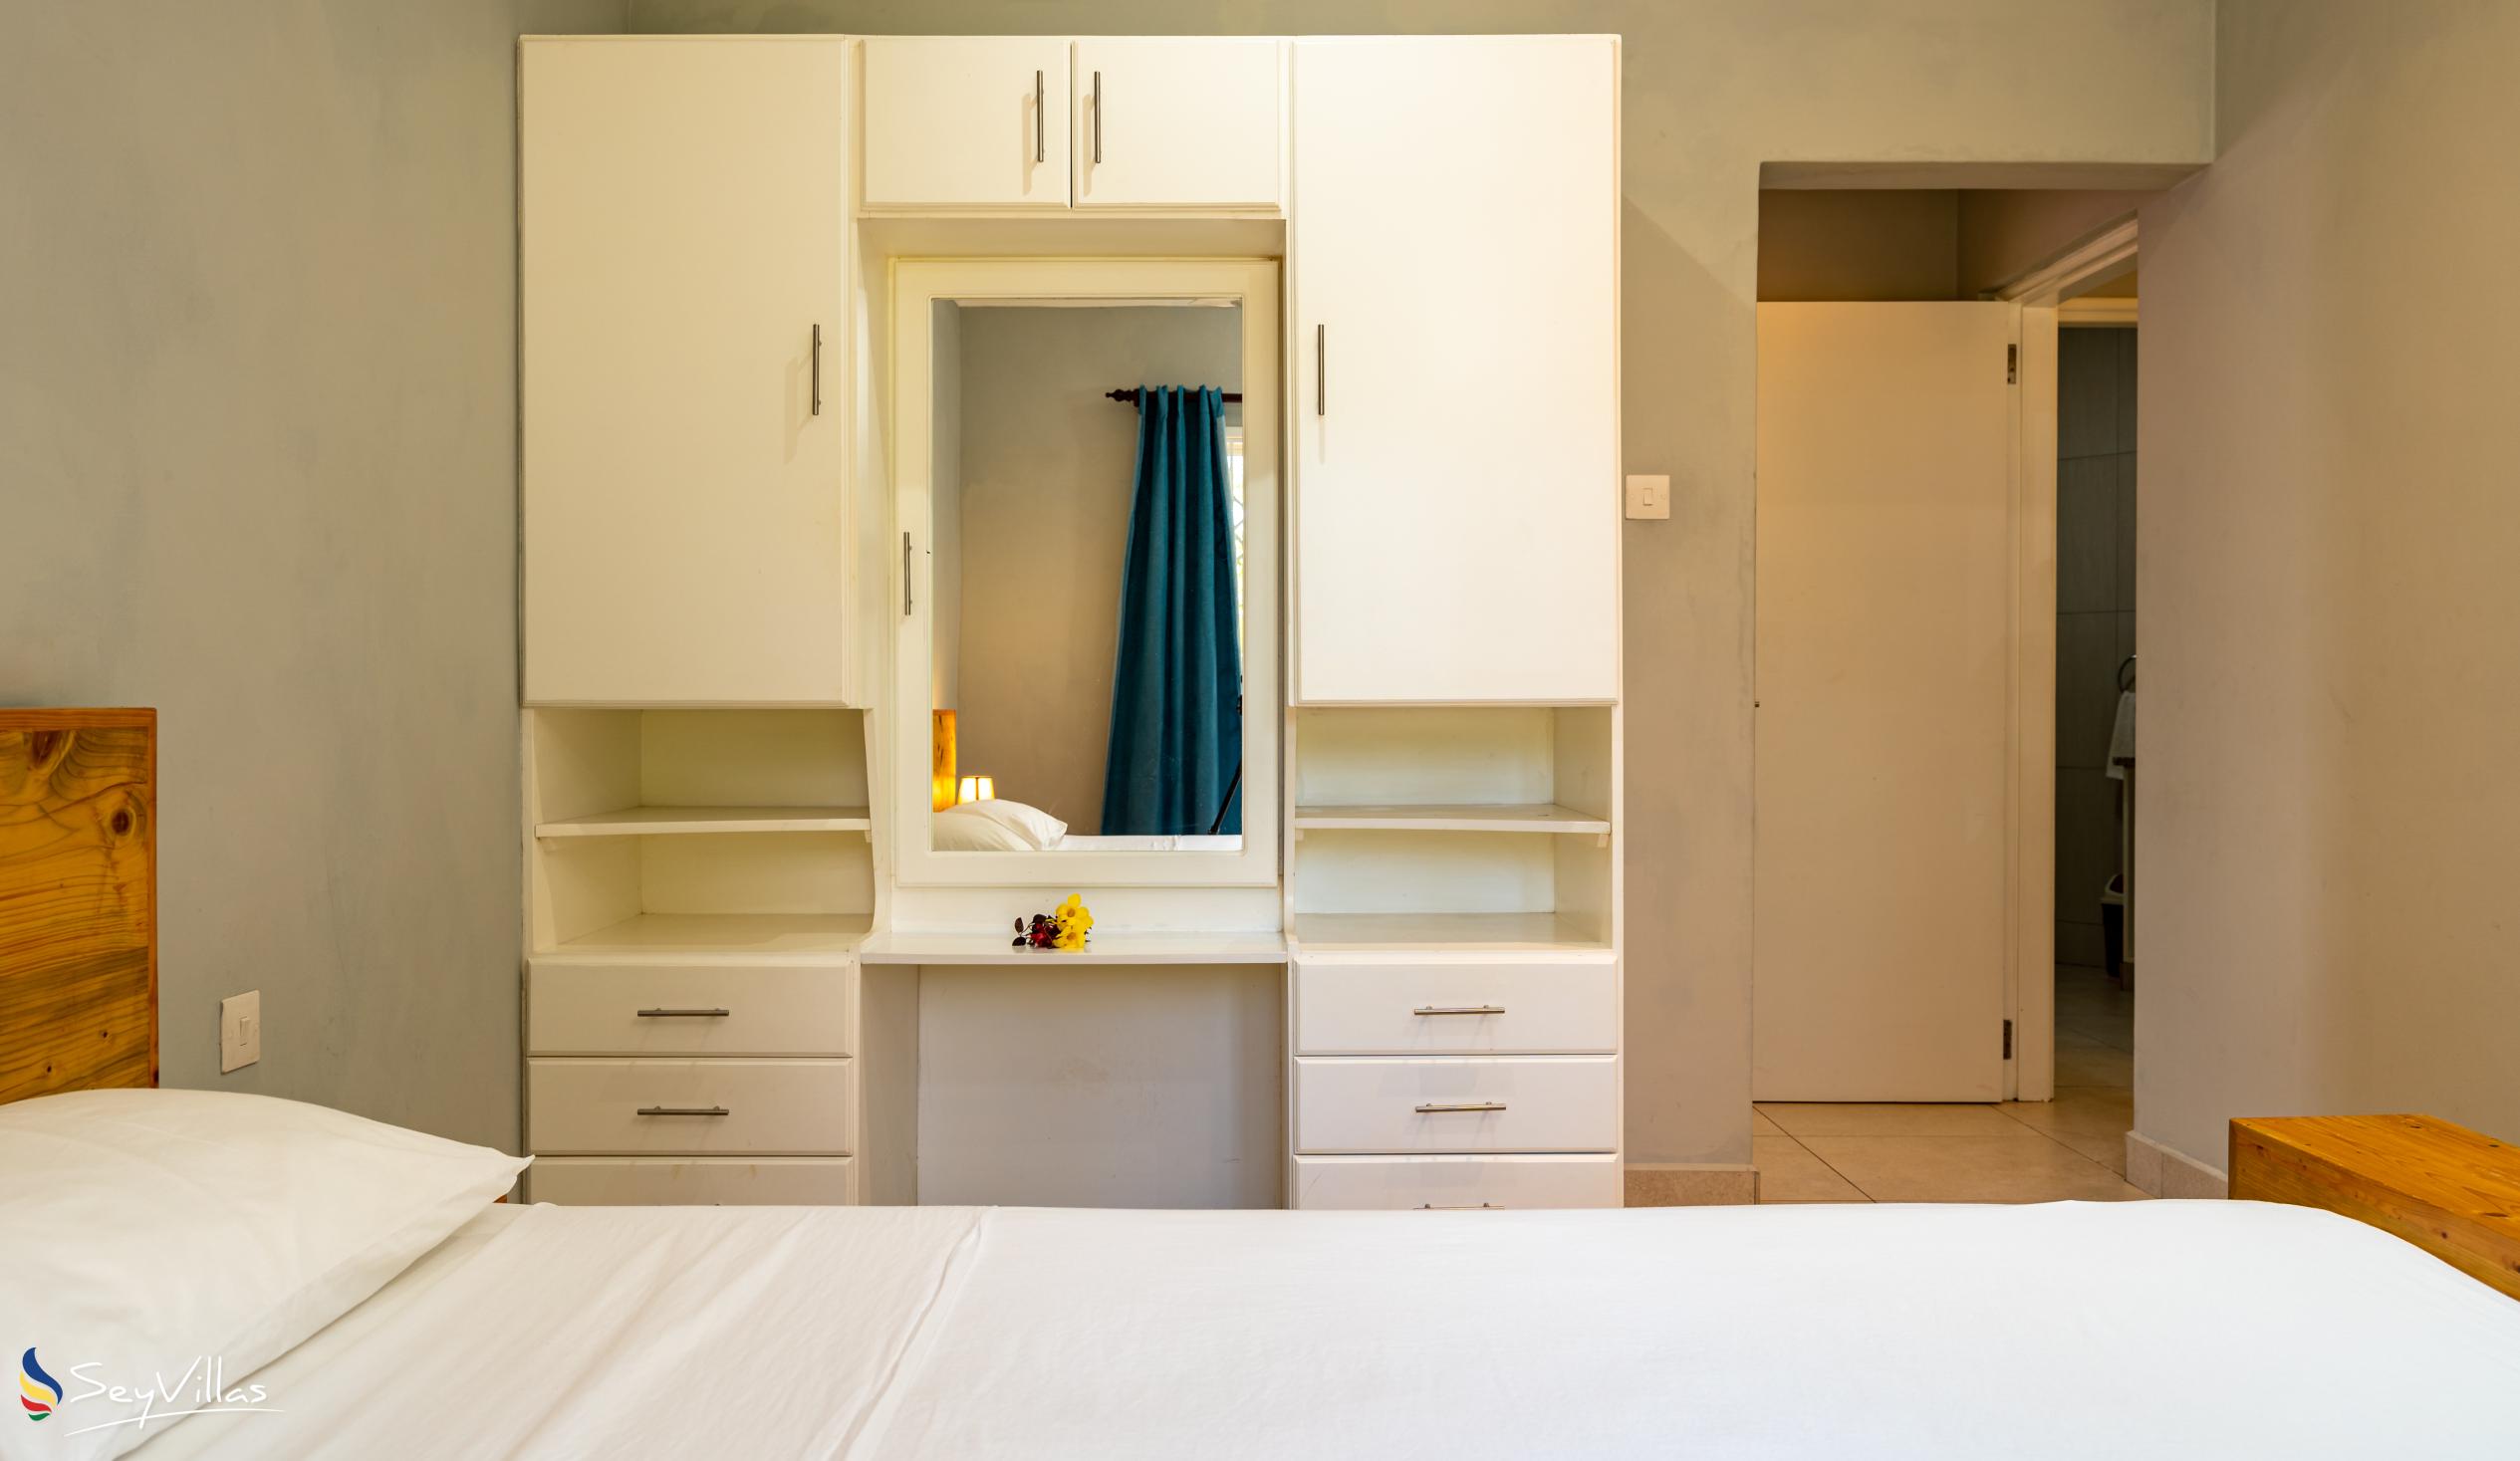 Foto 47: Riverside Residence - Appartamento con 2 camere da letto (piano terra) - Mahé (Seychelles)